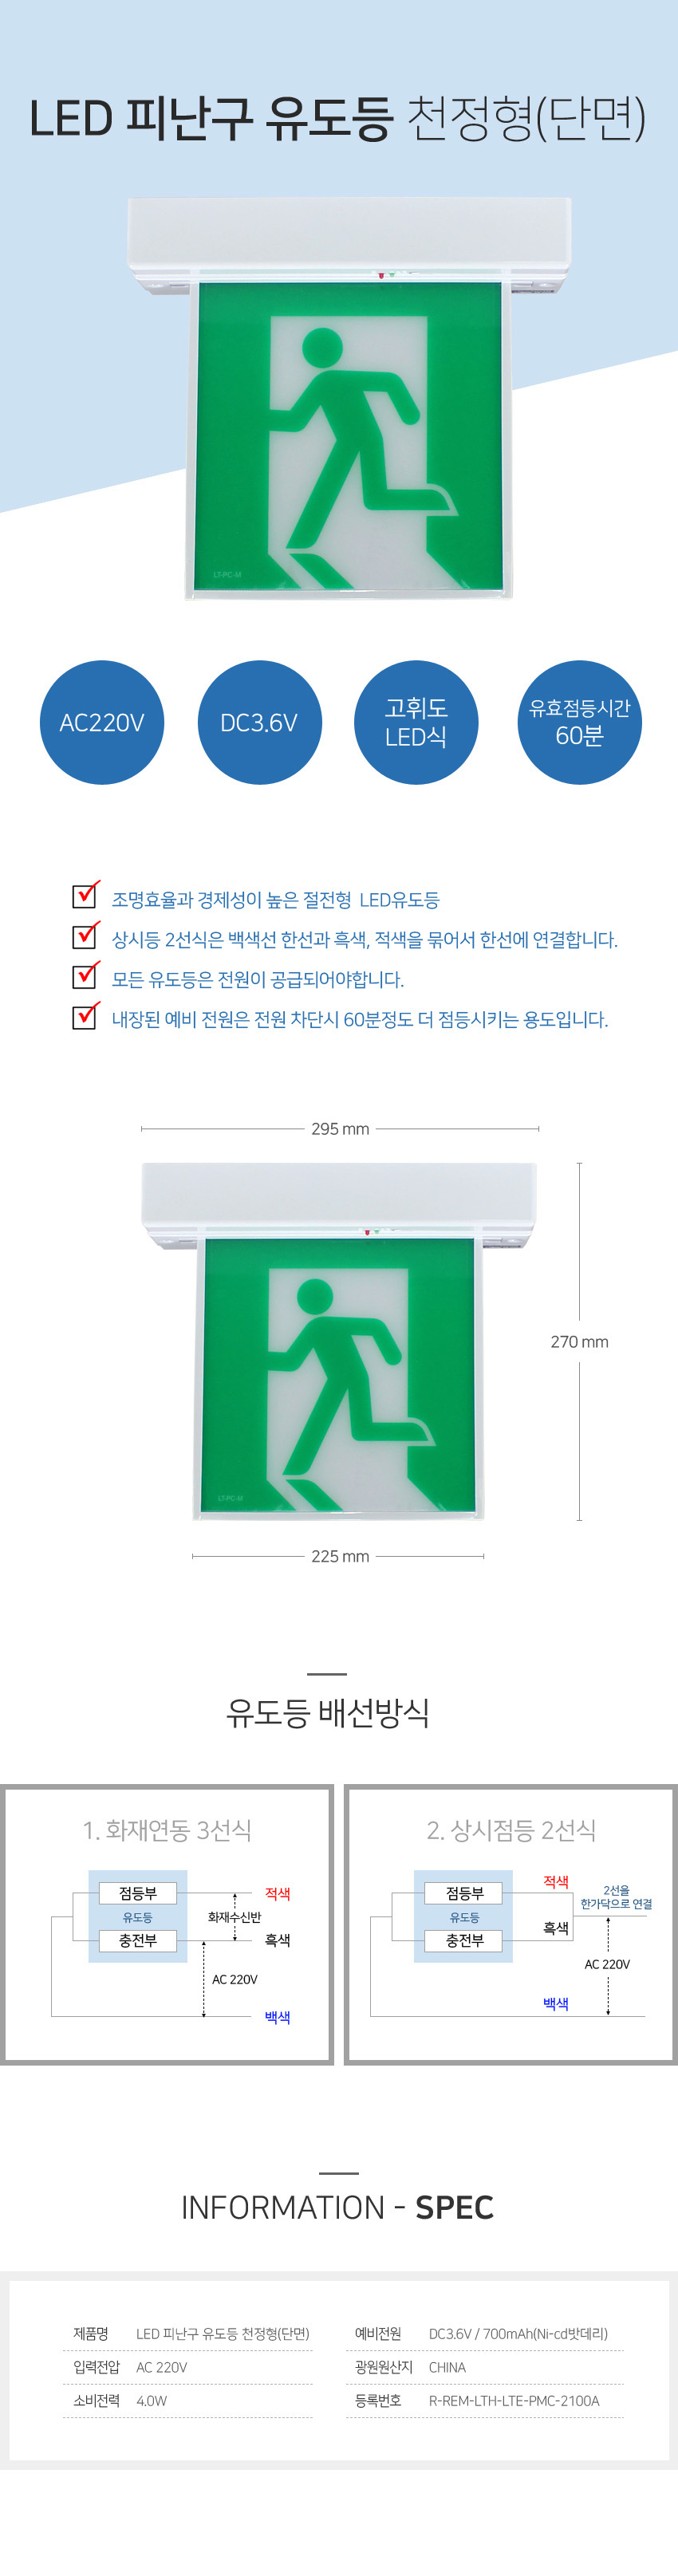 exit_chunjung_161642.jpg